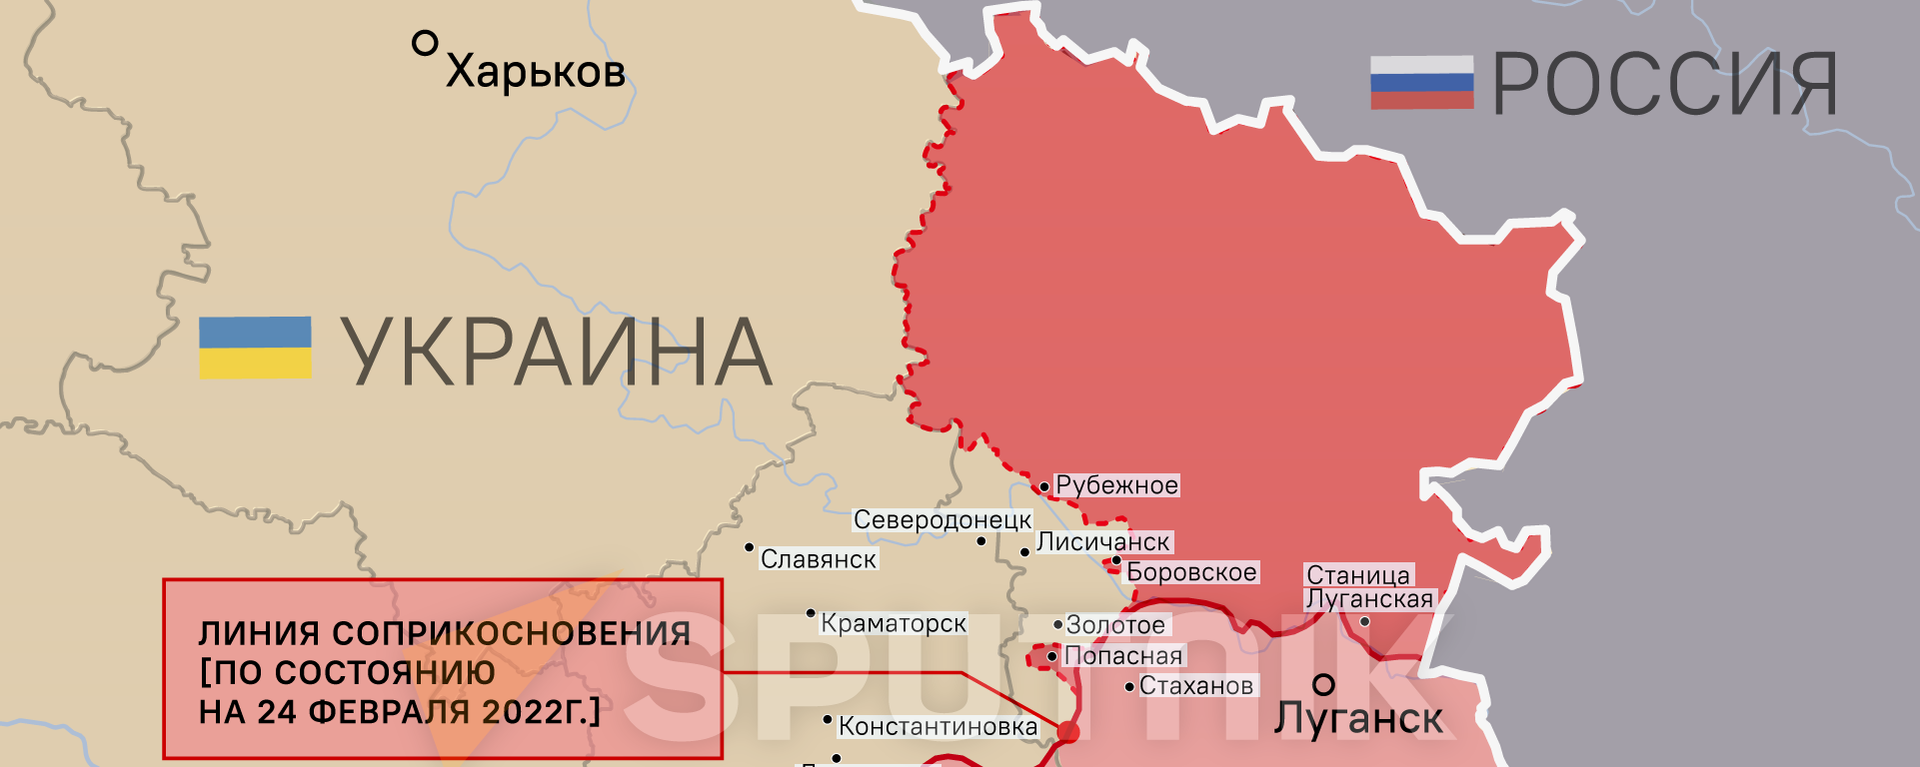 Карта освобожденной территории Донбасса - Sputnik Абхазия, 1920, 19.03.2022